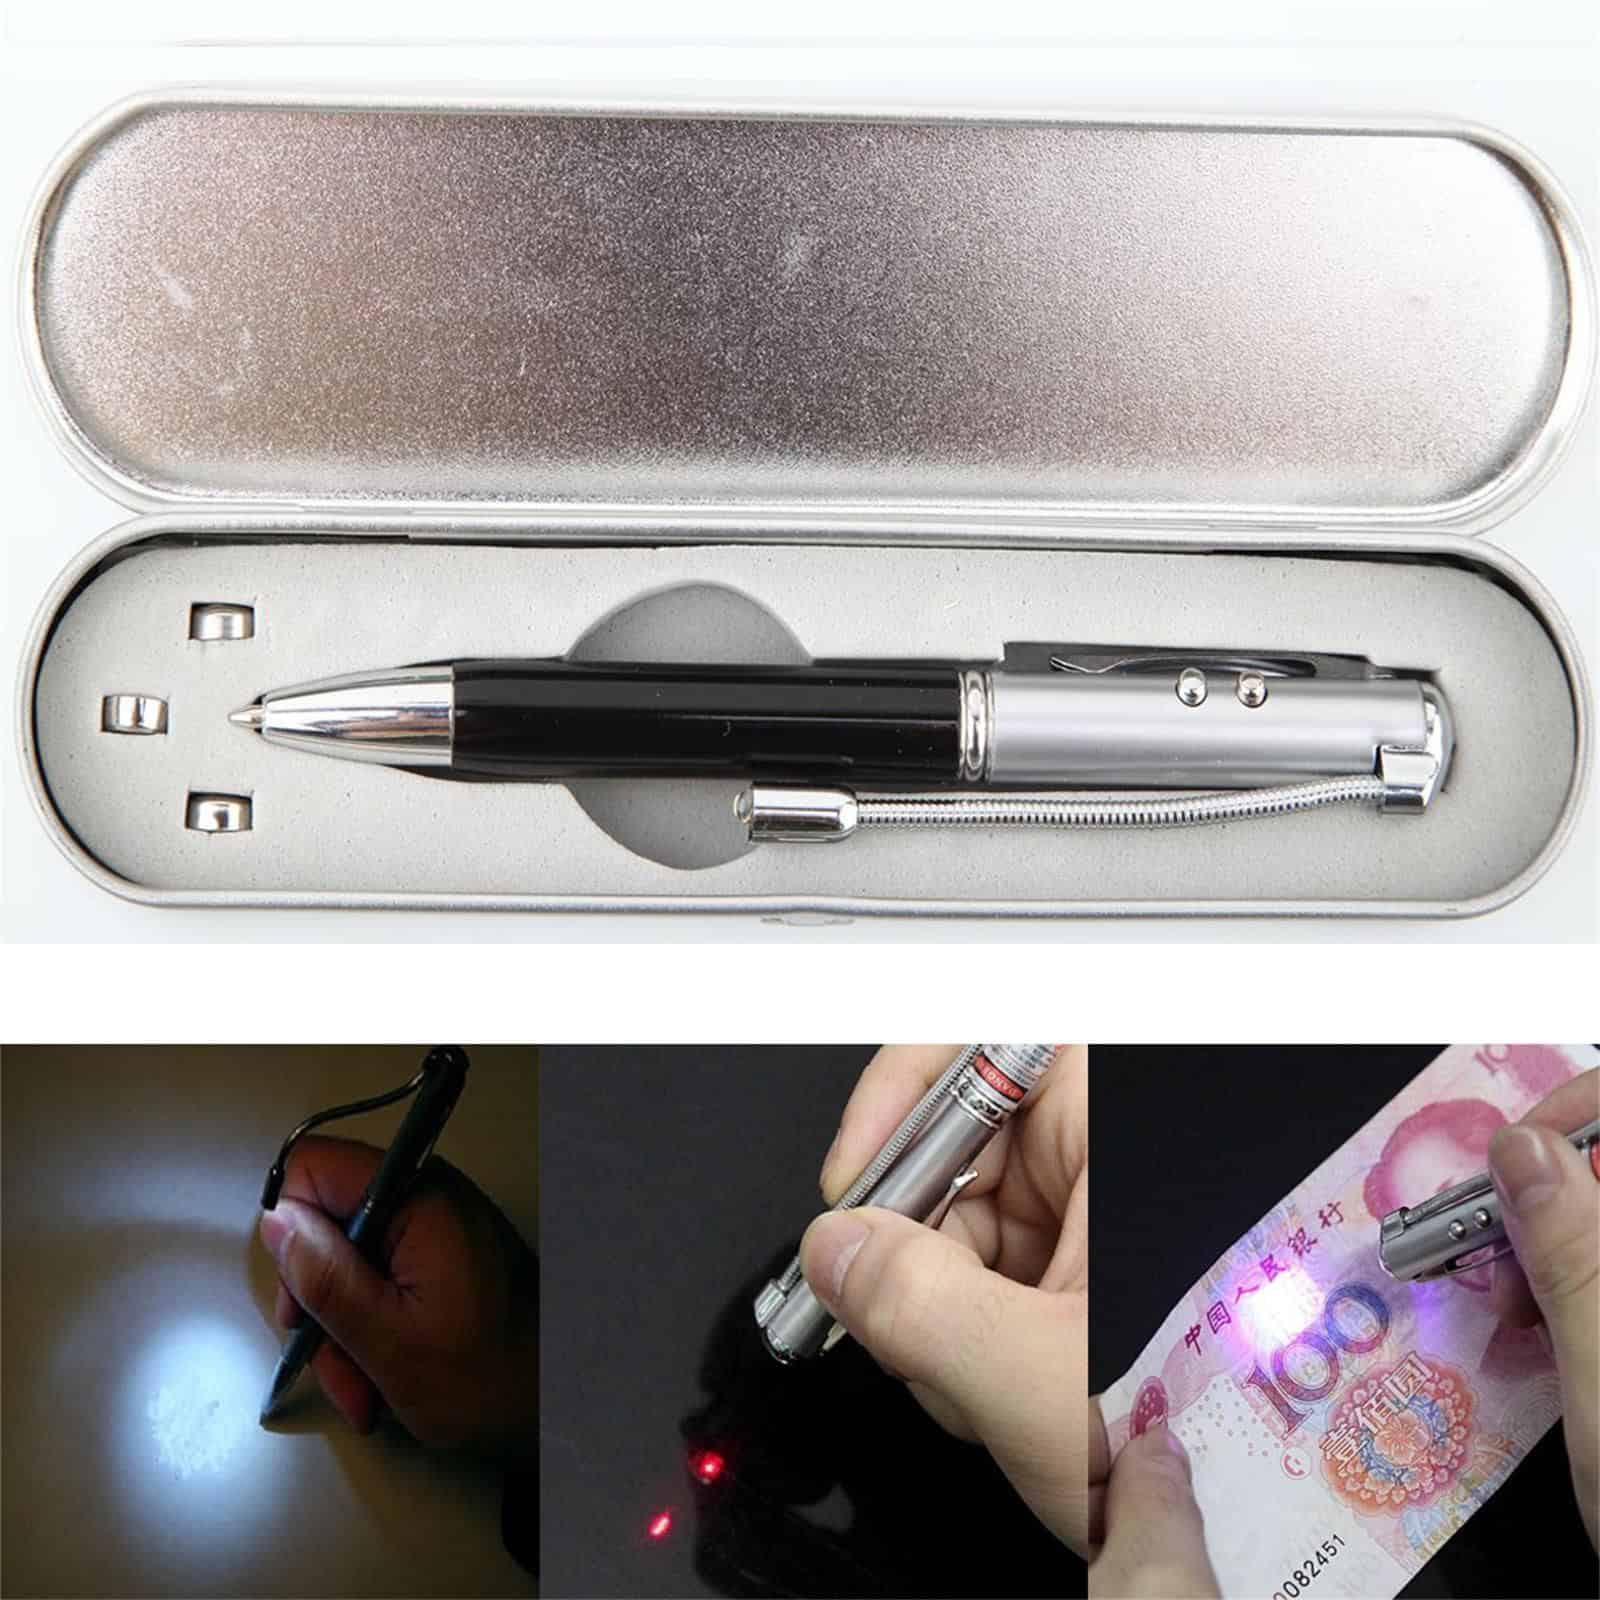 [Update] „Ultimate Geek Pen“? Das Gadget jetzt aus China für nur 3,95 Euro oder mit Preisvorschlag noch günstiger!!